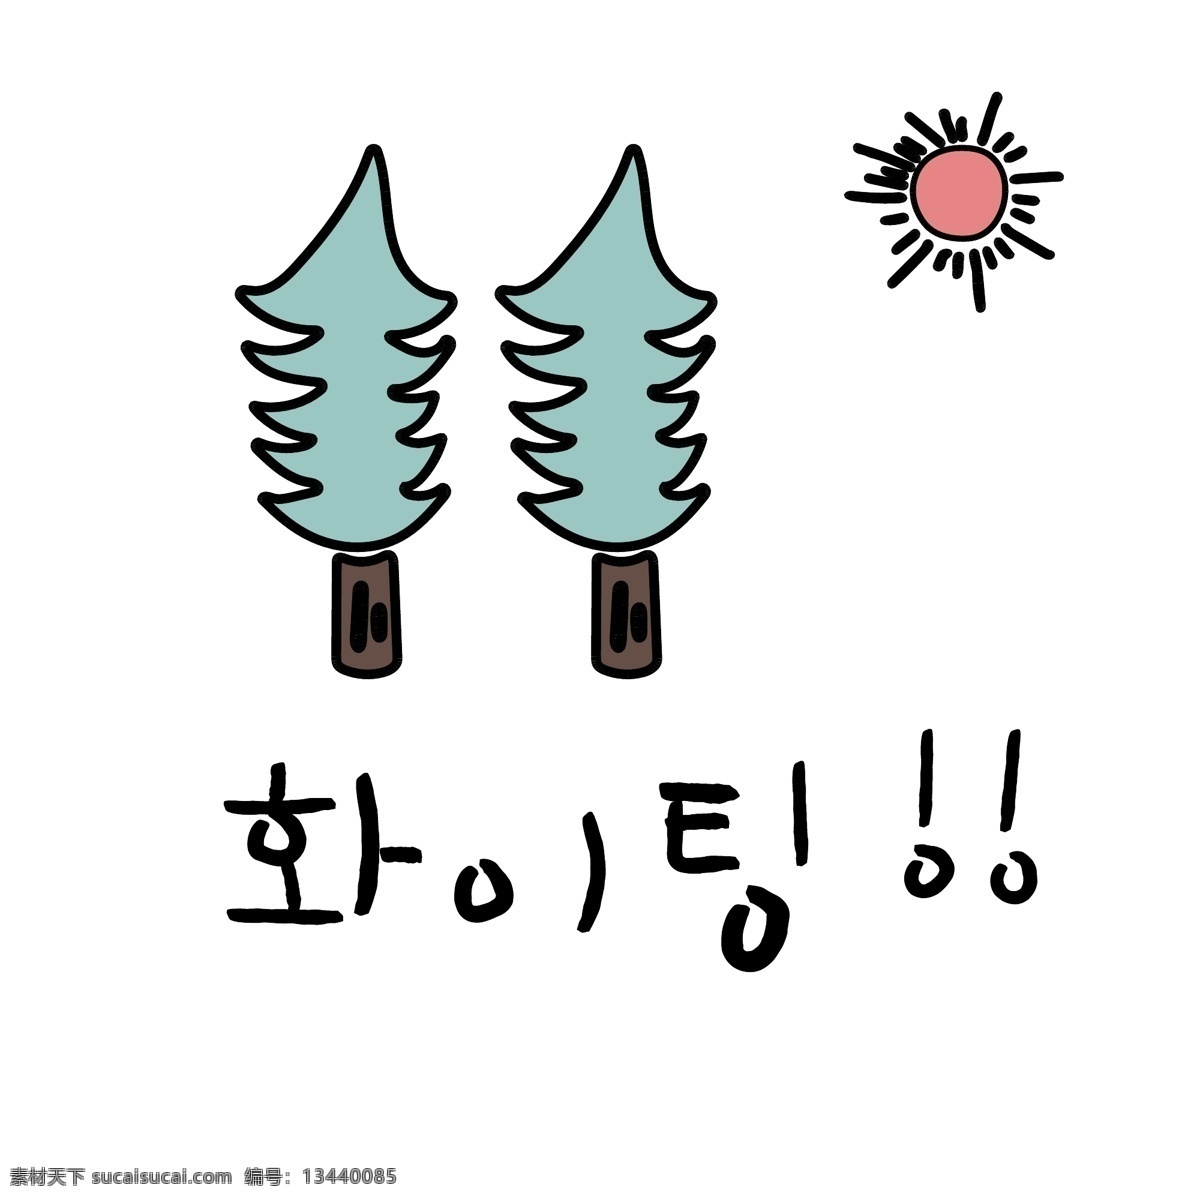 圣诞树 韩国 常用语 加油 肝药 绿色 对话 红色 漫画 小的 向量 日常用语 卡通 太阳 三个